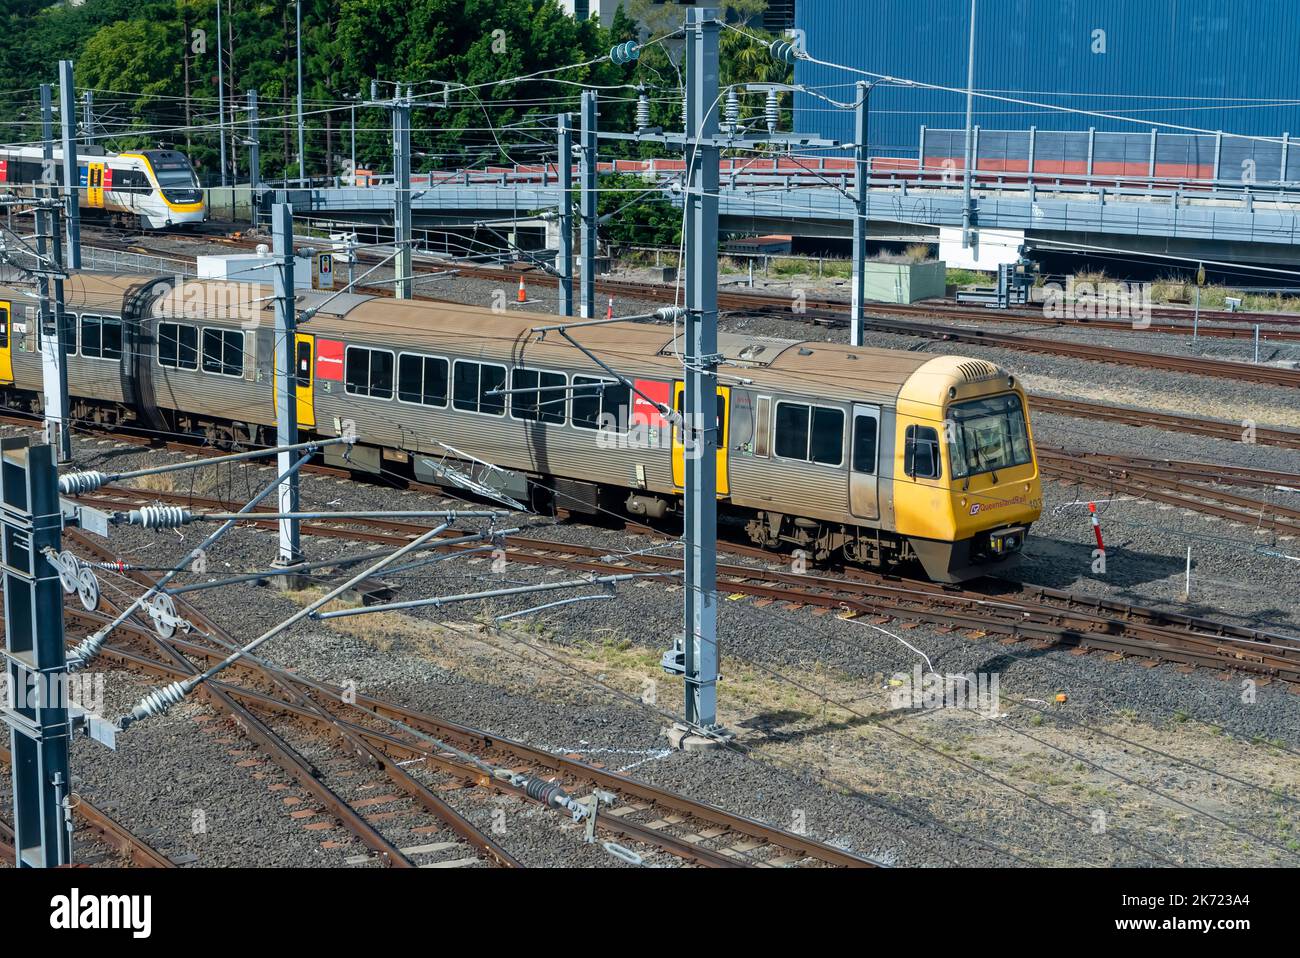 Brisbane, Australia - Aug 5, 2022: Close-up view of passenger train in Brisbane, Australia Stock Photo